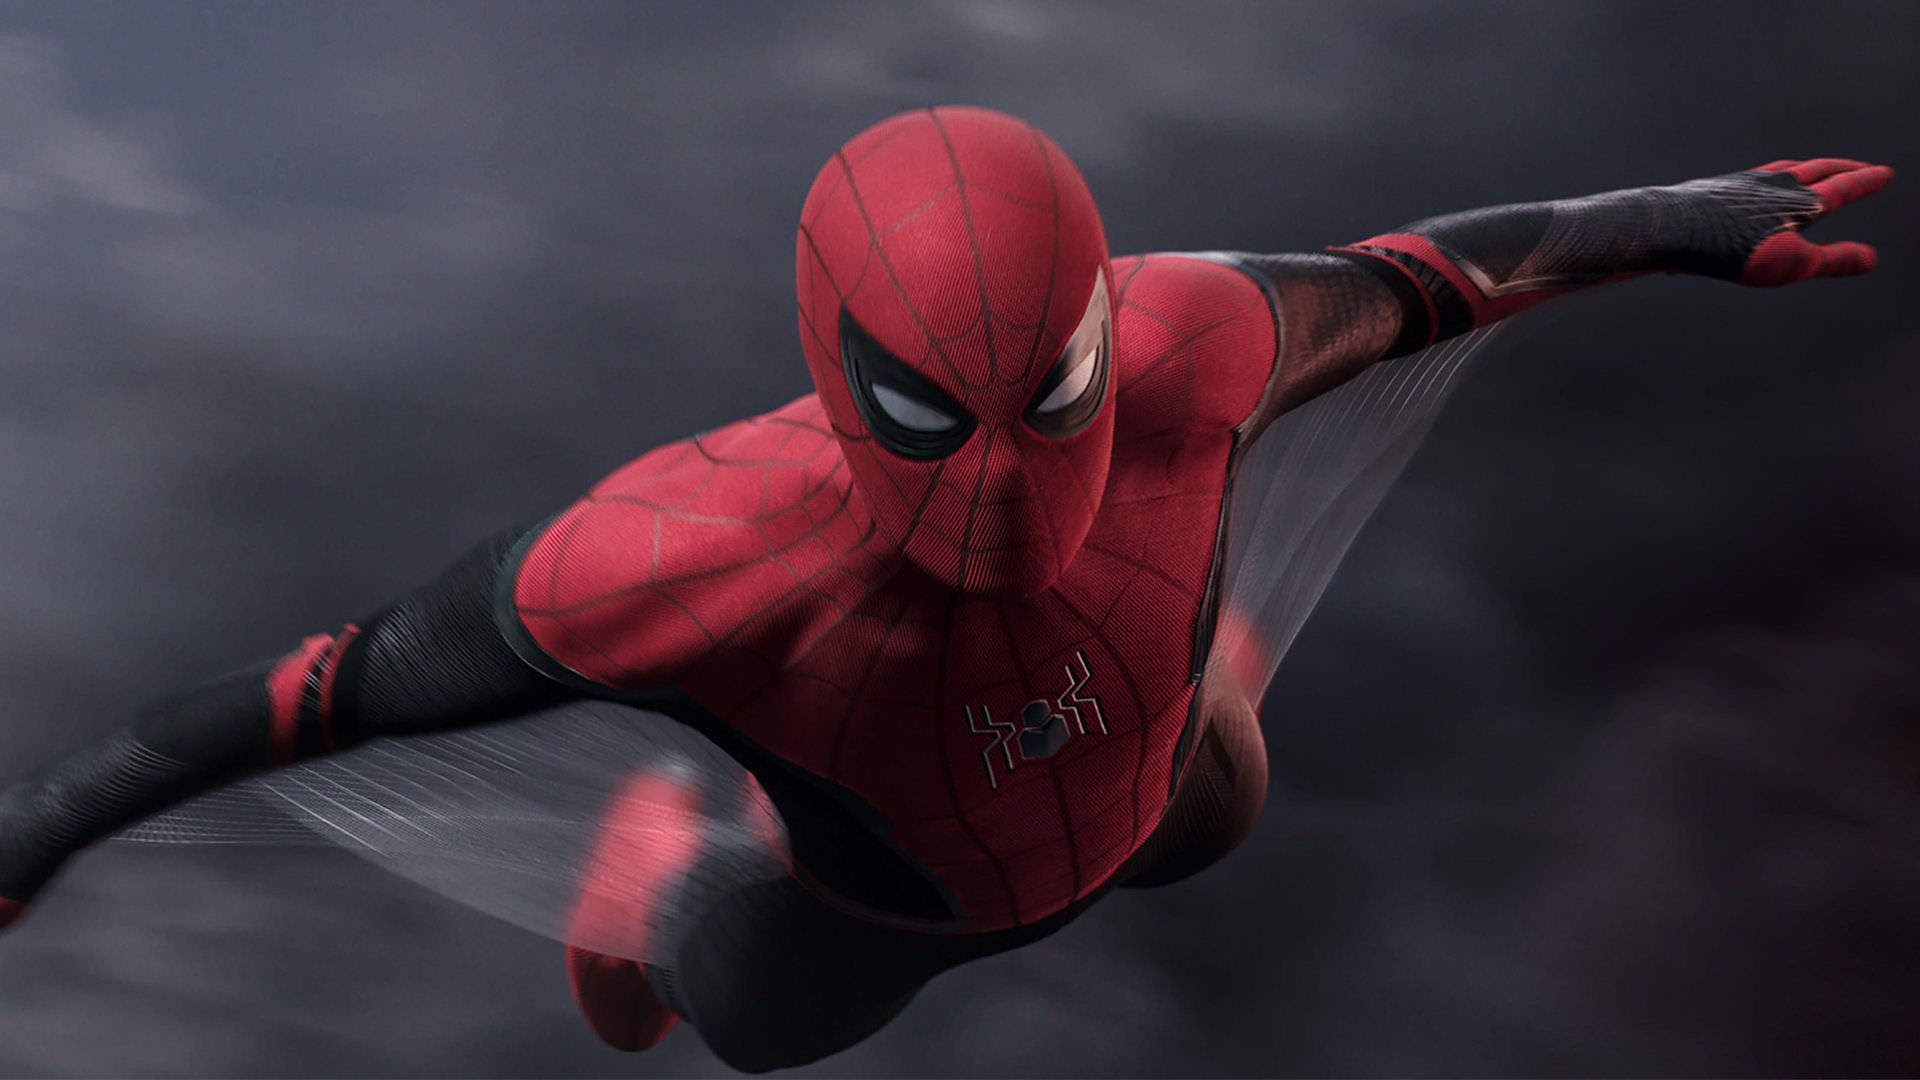 اولین تصاویر رسمی فیلم Spider-Man 3؛ شوخی با نام قسمت جدید مرد عنکبوتی